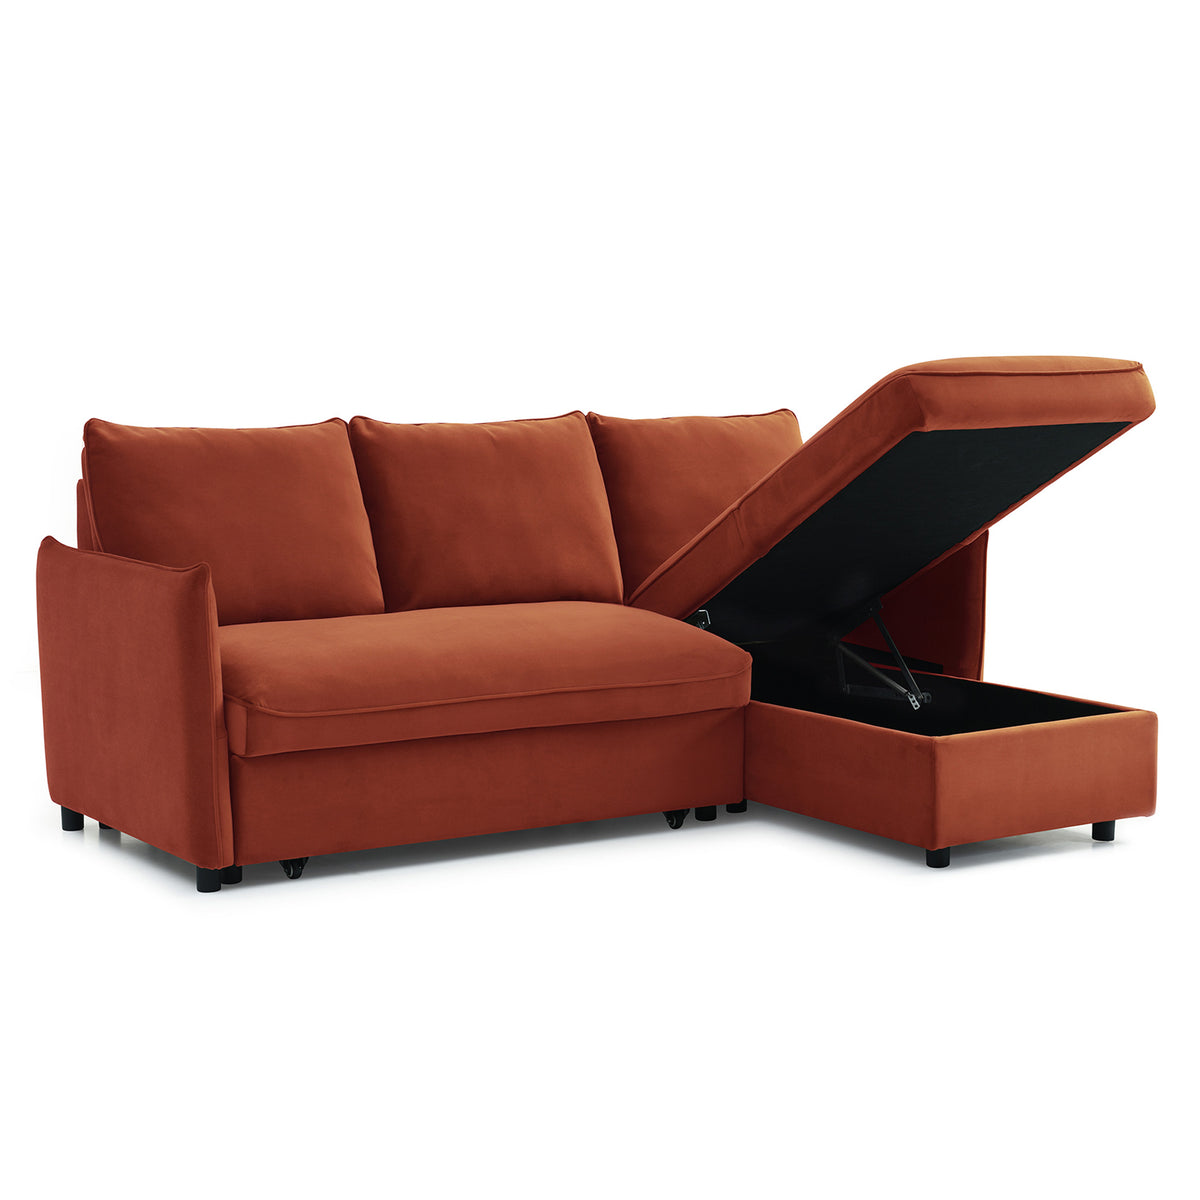 Thalia Burnt Orange Velvet 3 Seater Corner Chaise Sofa Bed